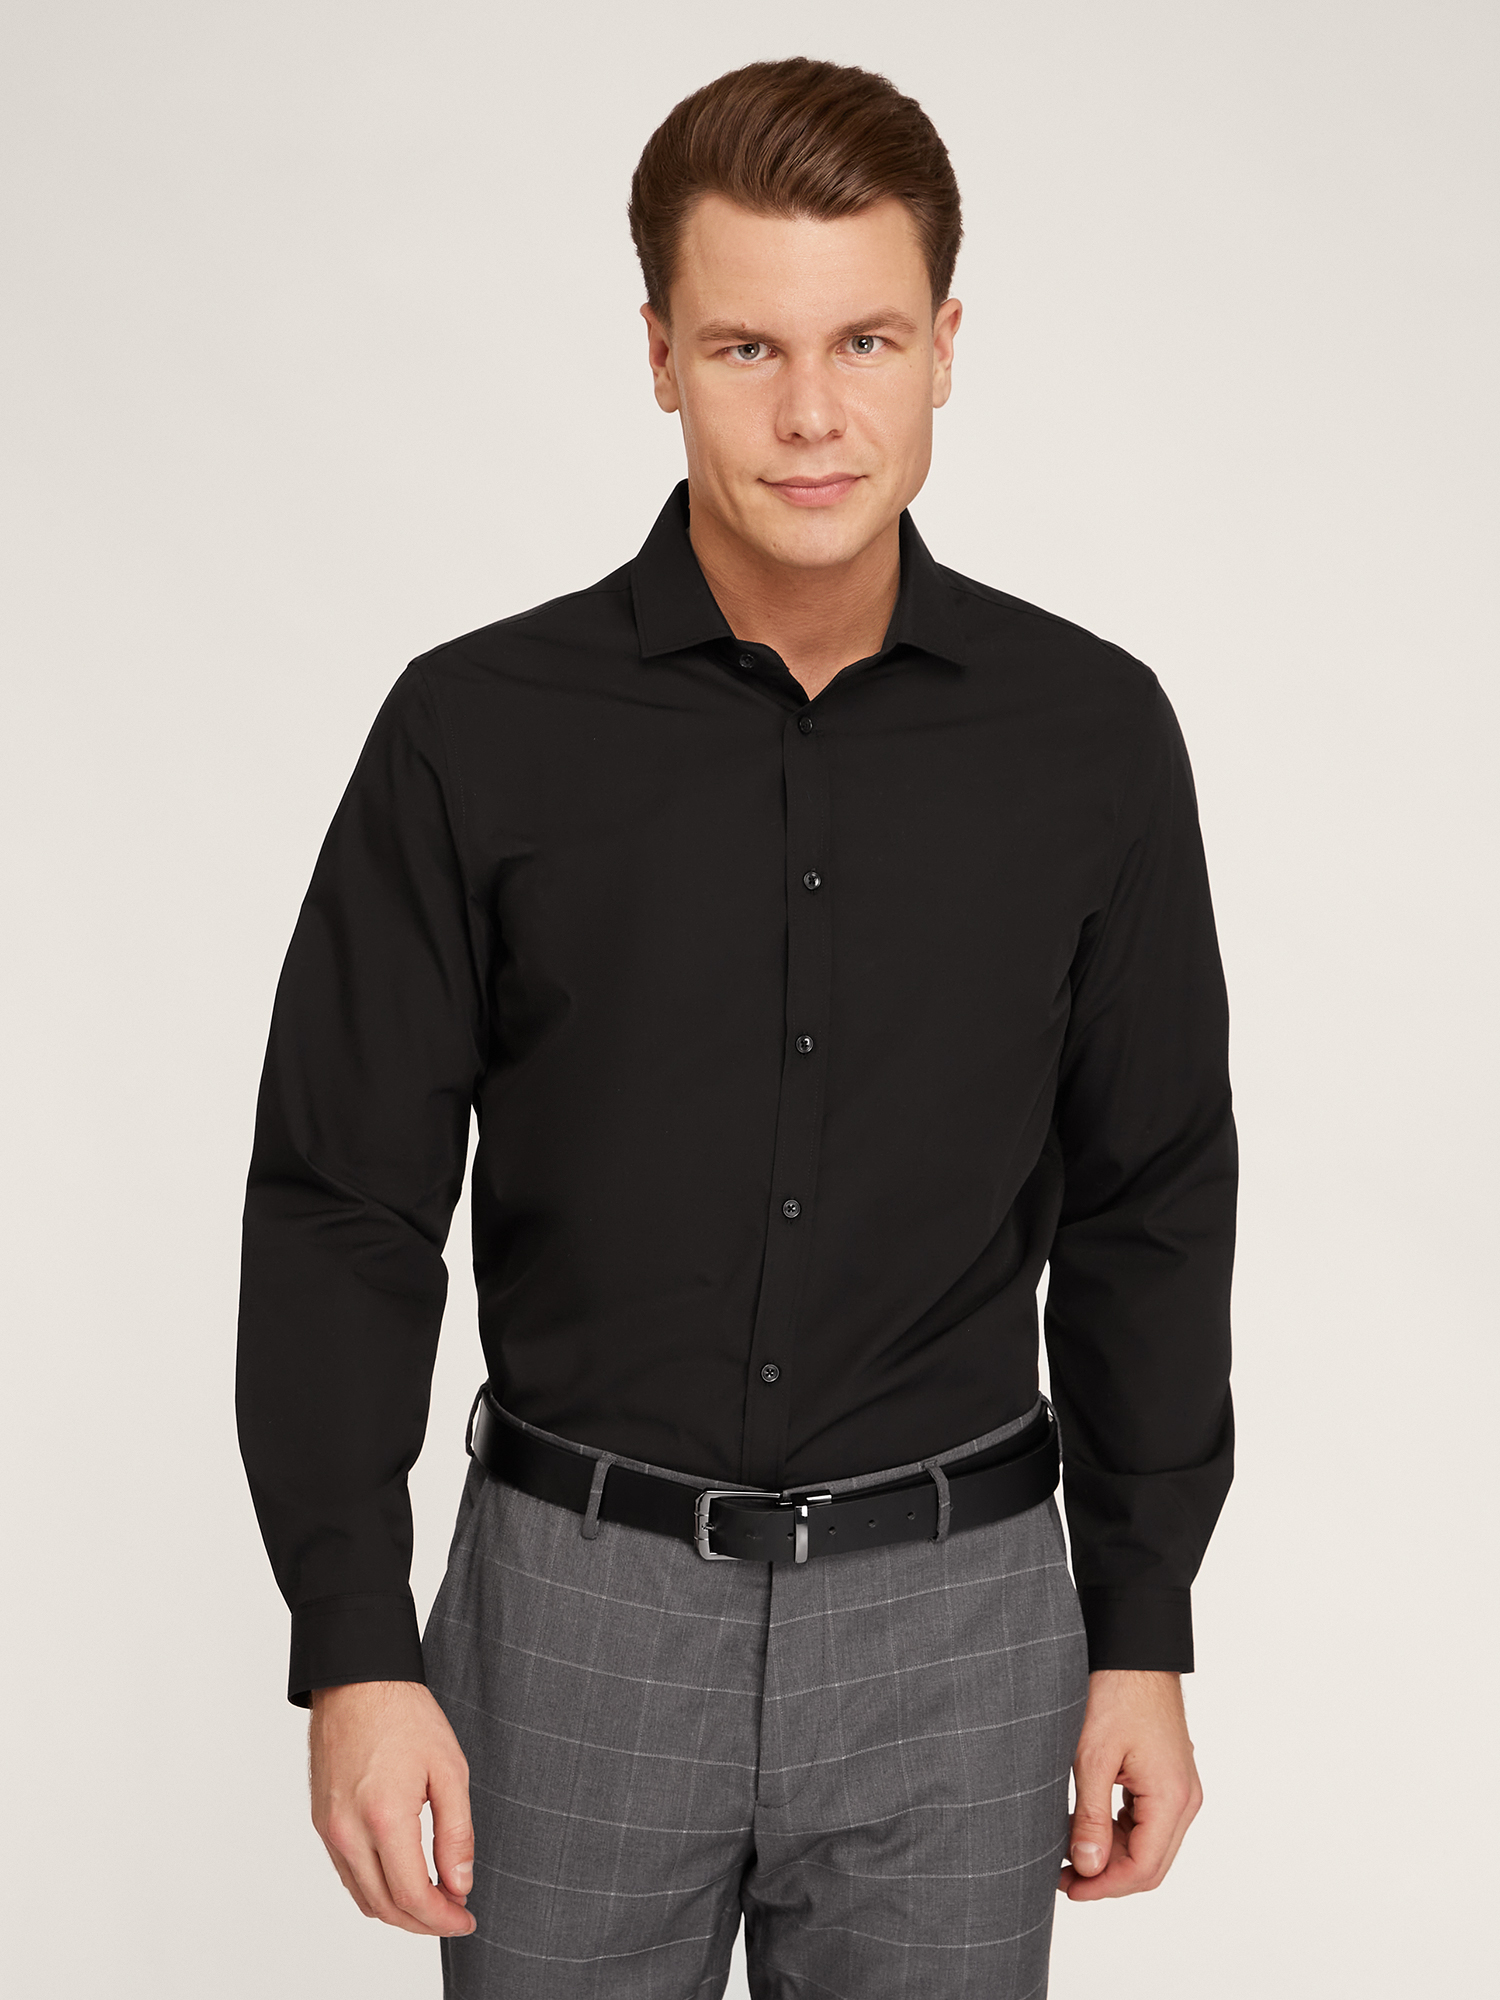 Рубашка мужская oodji 3B110034M-1 черная L - купить в Москве, цены на Мегамаркет | 100032492671